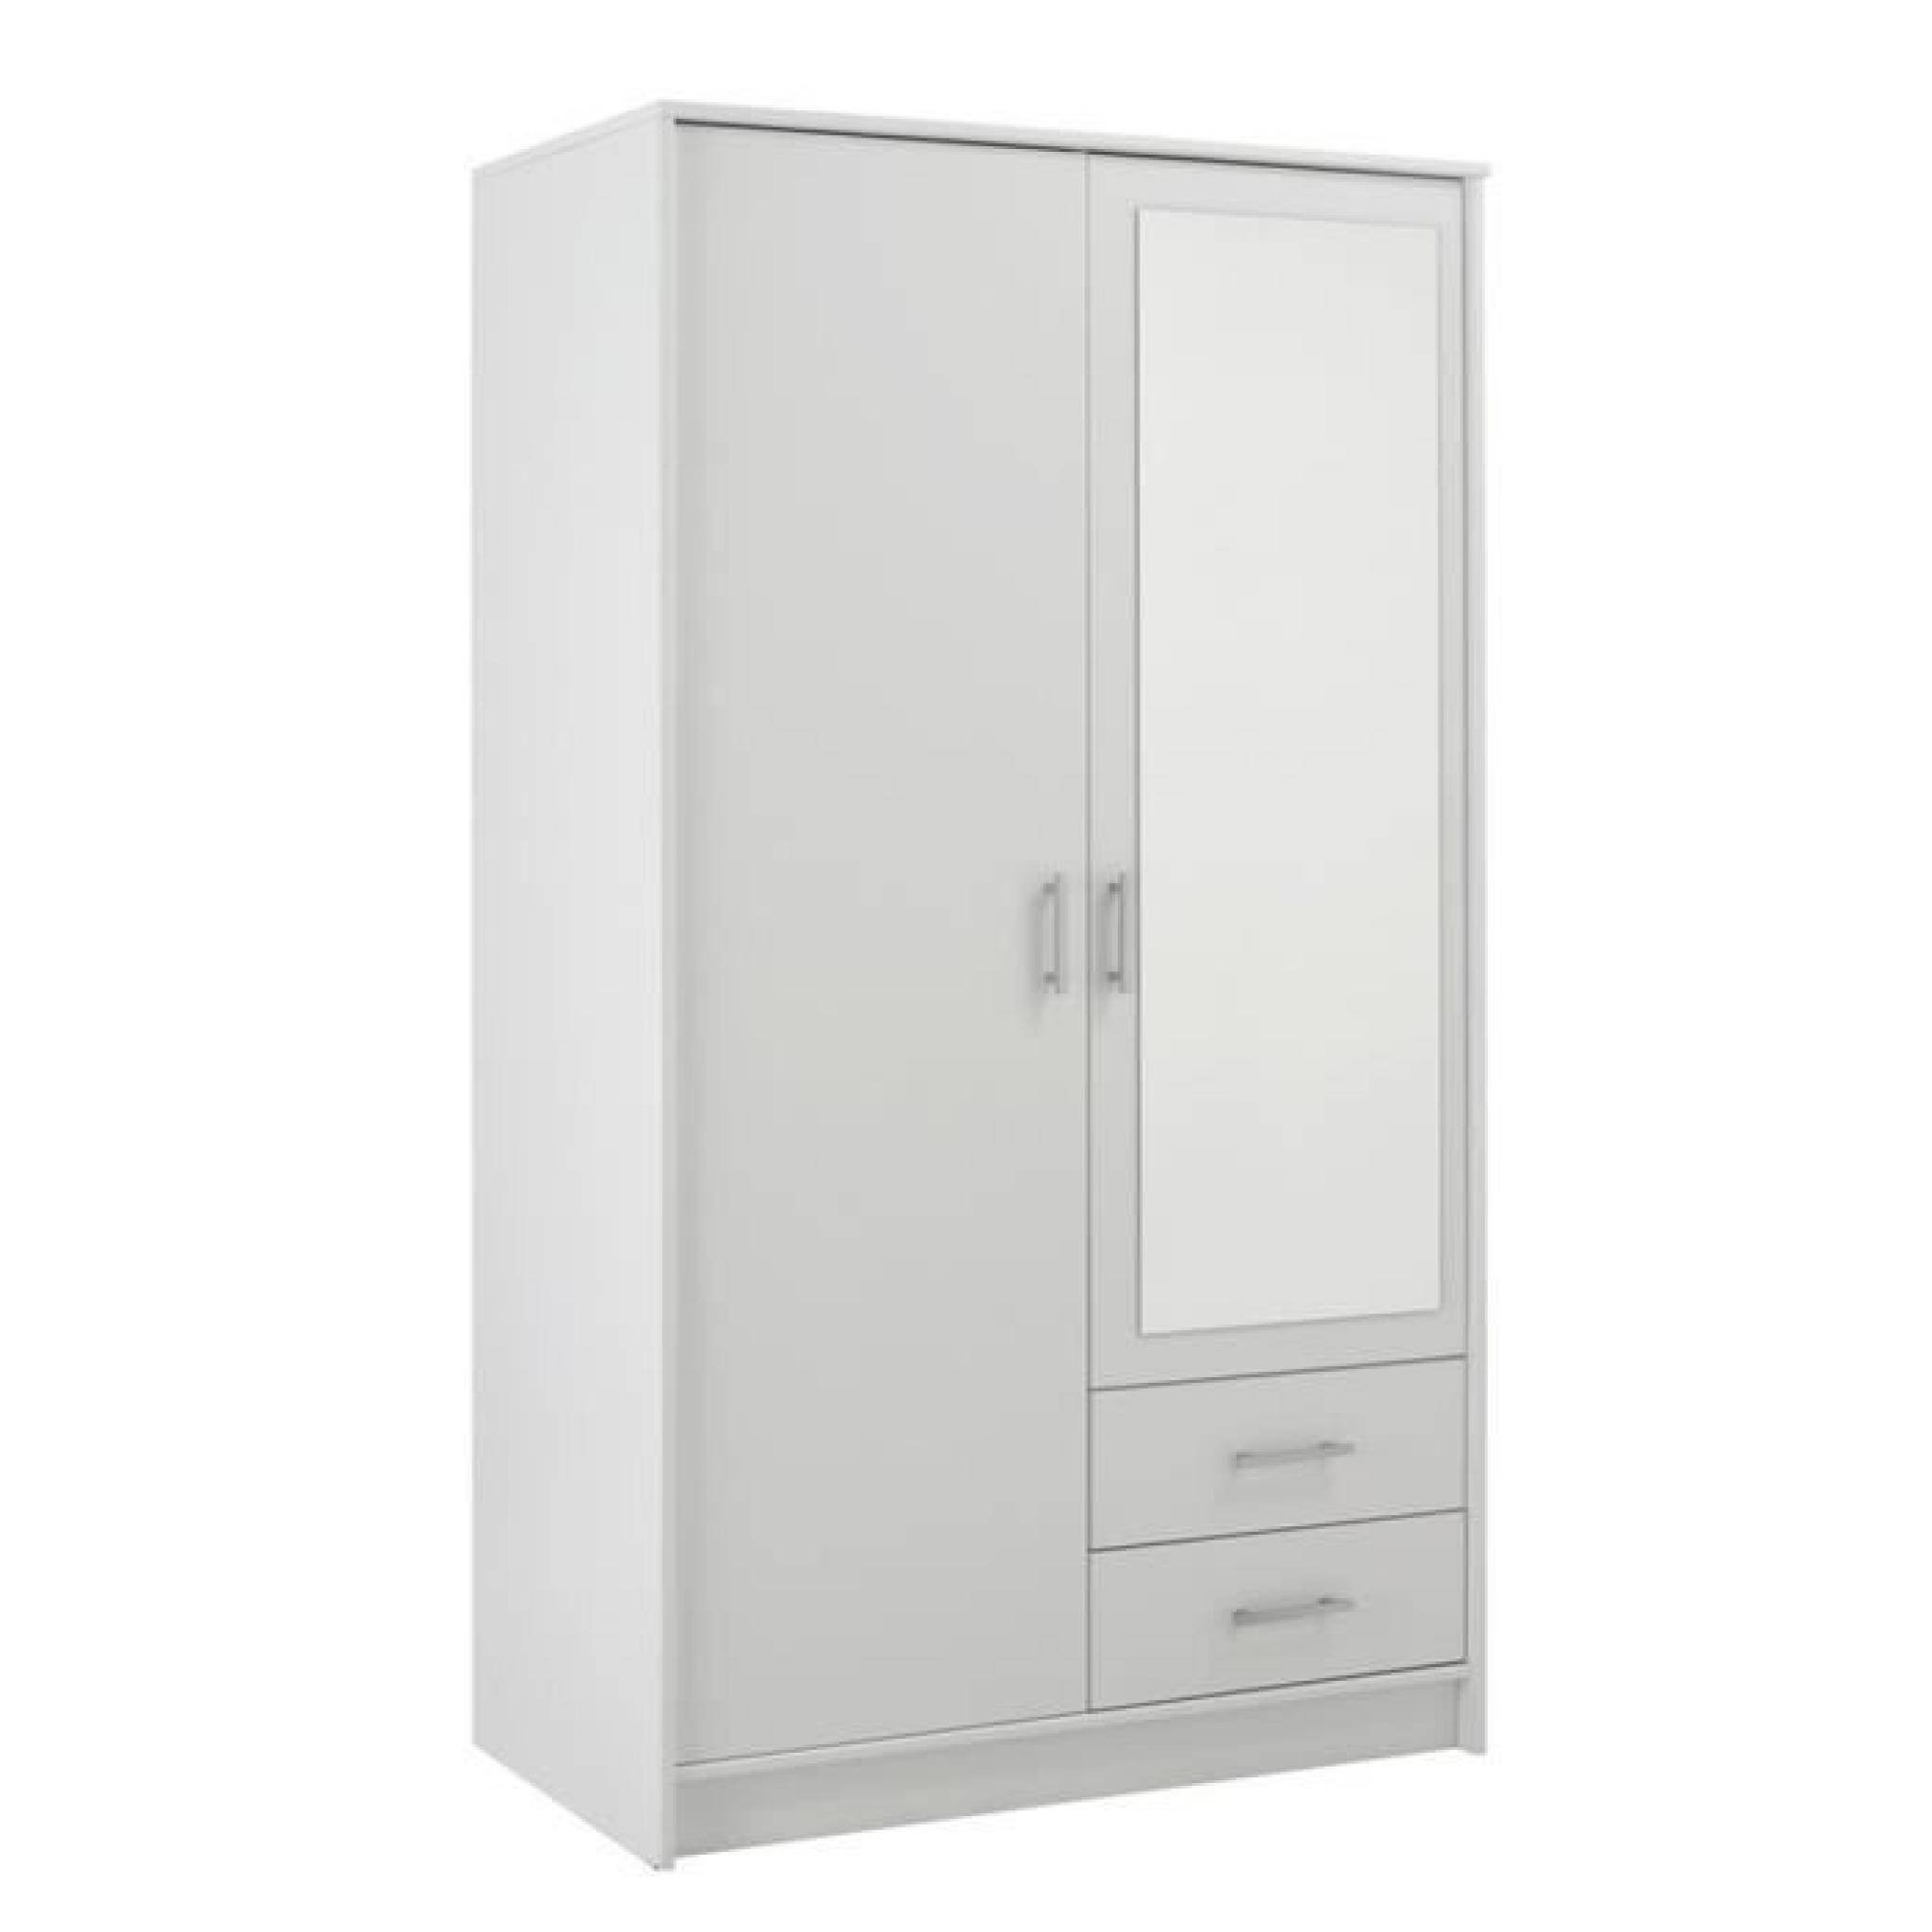 Armoire avec 2 portes et 2 tiroirs coloris Blanc megève, H 180 x L 90 x P 50 cm